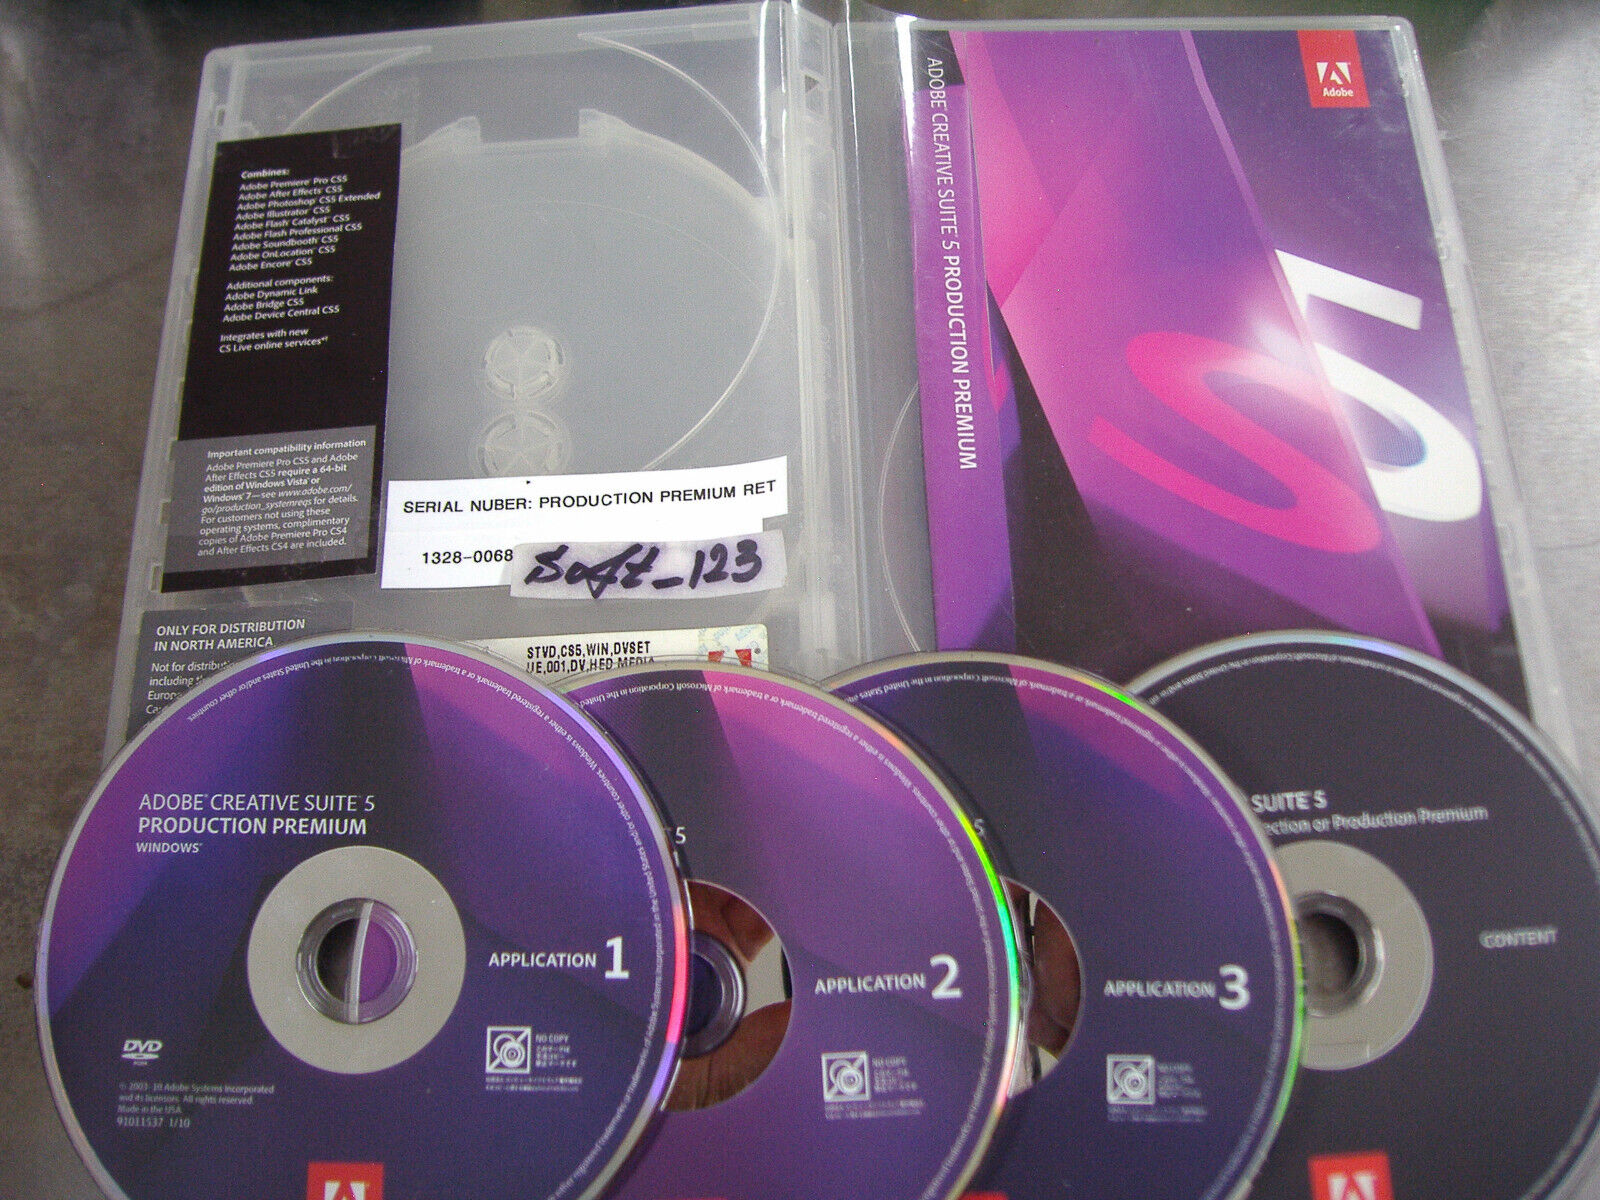 Adobe Creative Suite CS5 Production Premium Windows Full Retail DVDs w/Serial